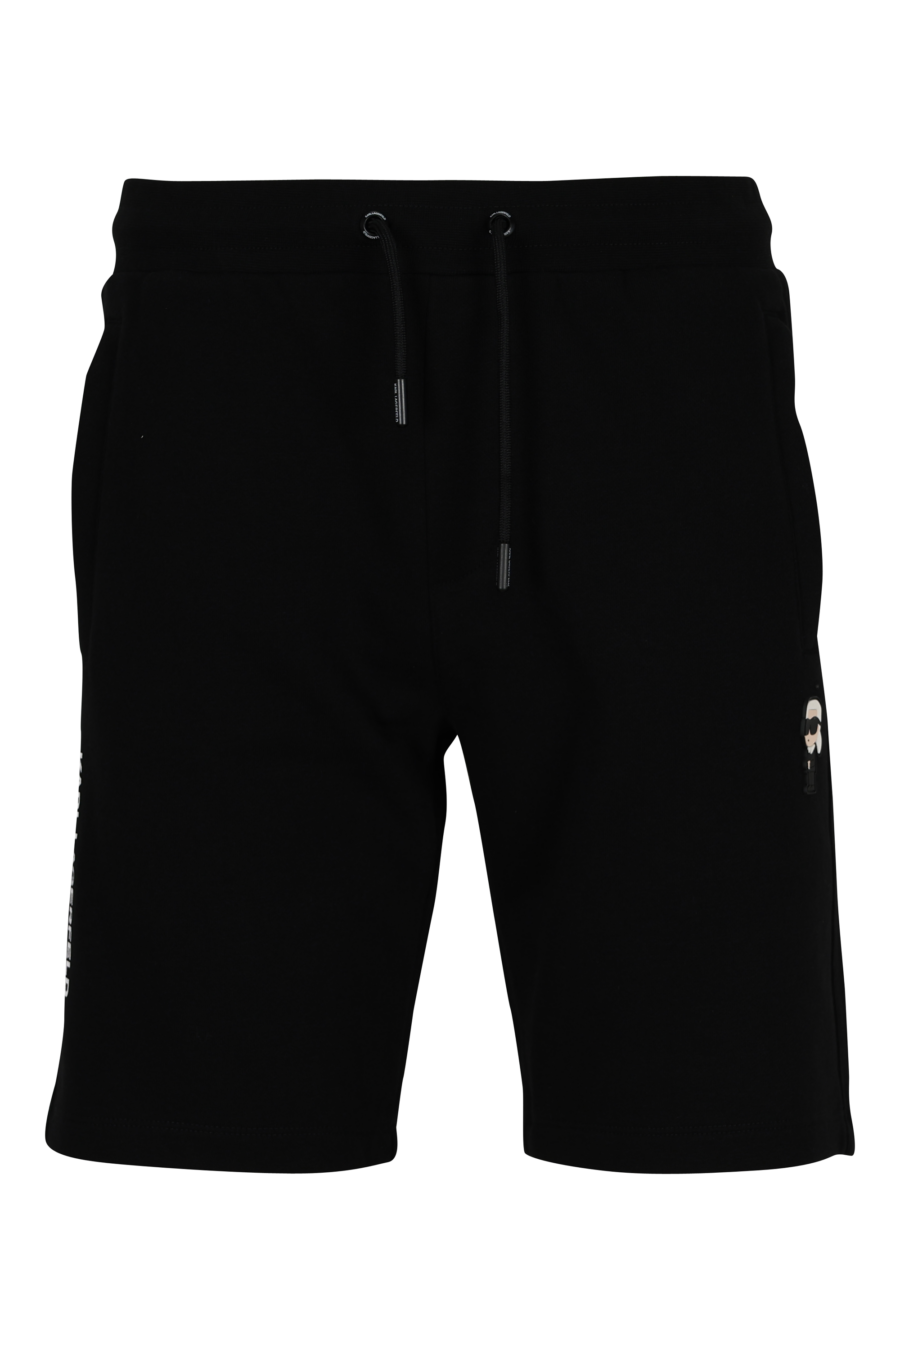 Pantalón de chándal negro midi con minilogo "karl" en goma - 4062226933087